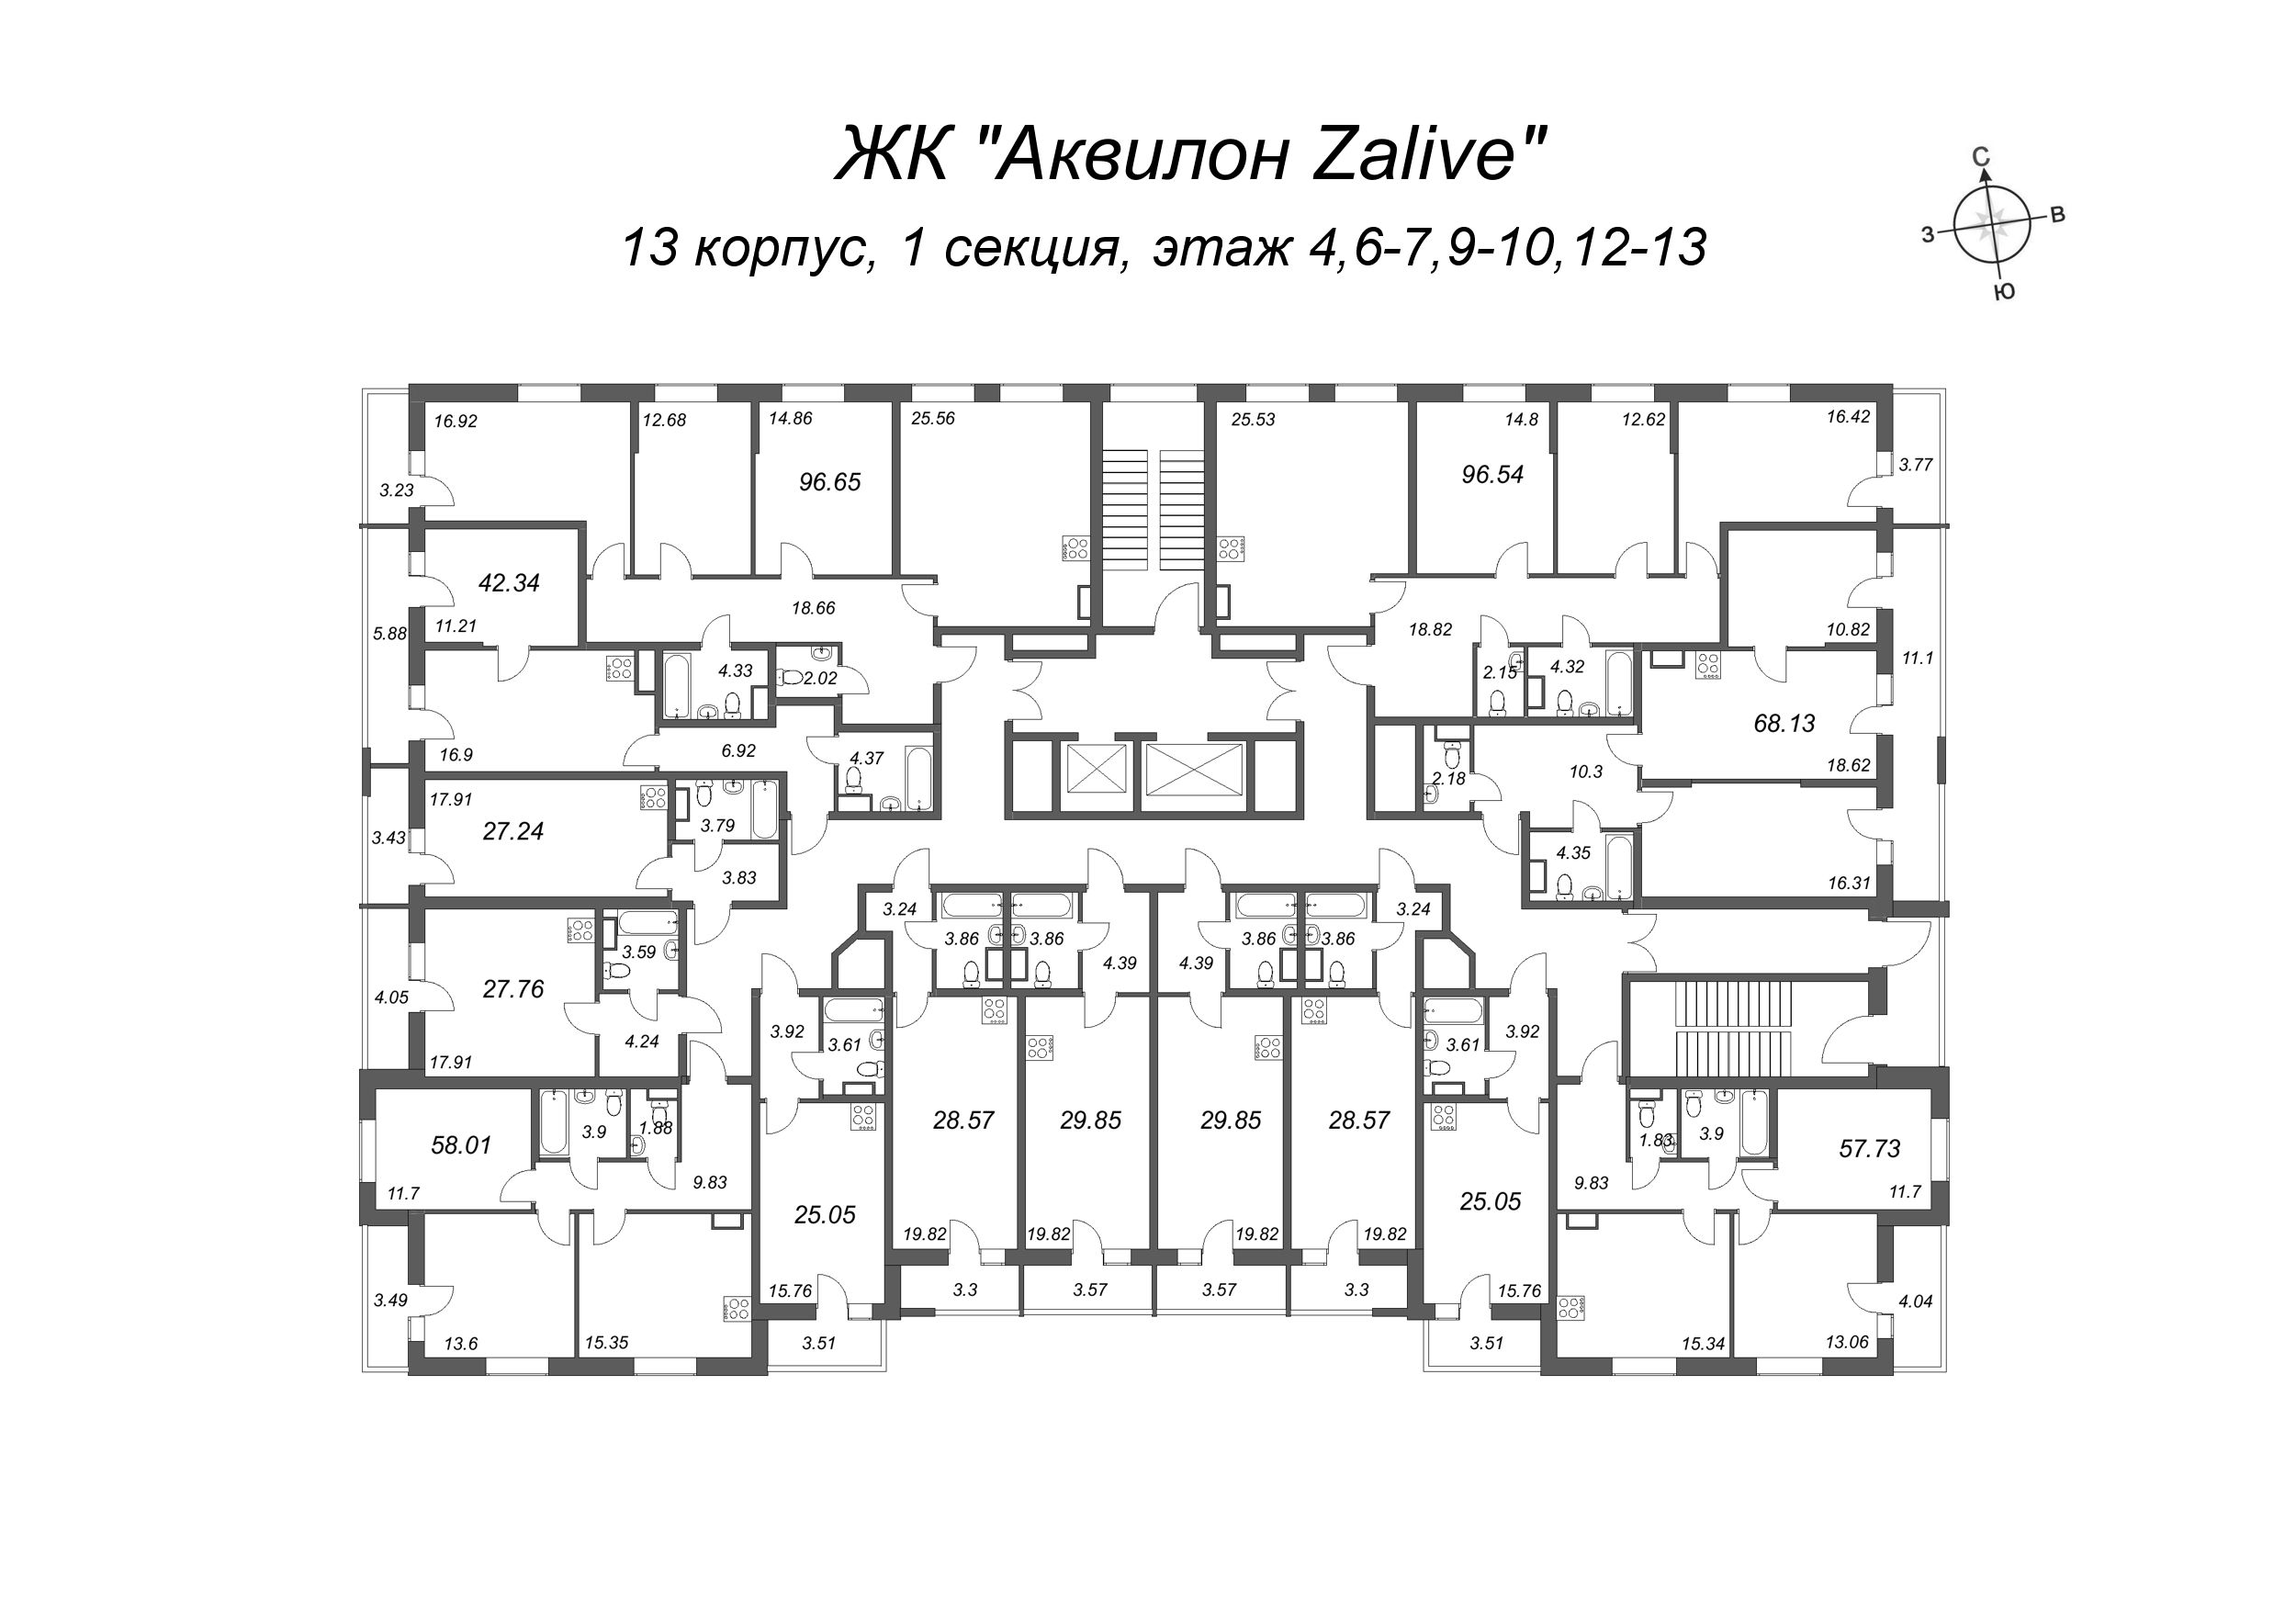 3-комнатная (Евро) квартира, 57.73 м² - плани